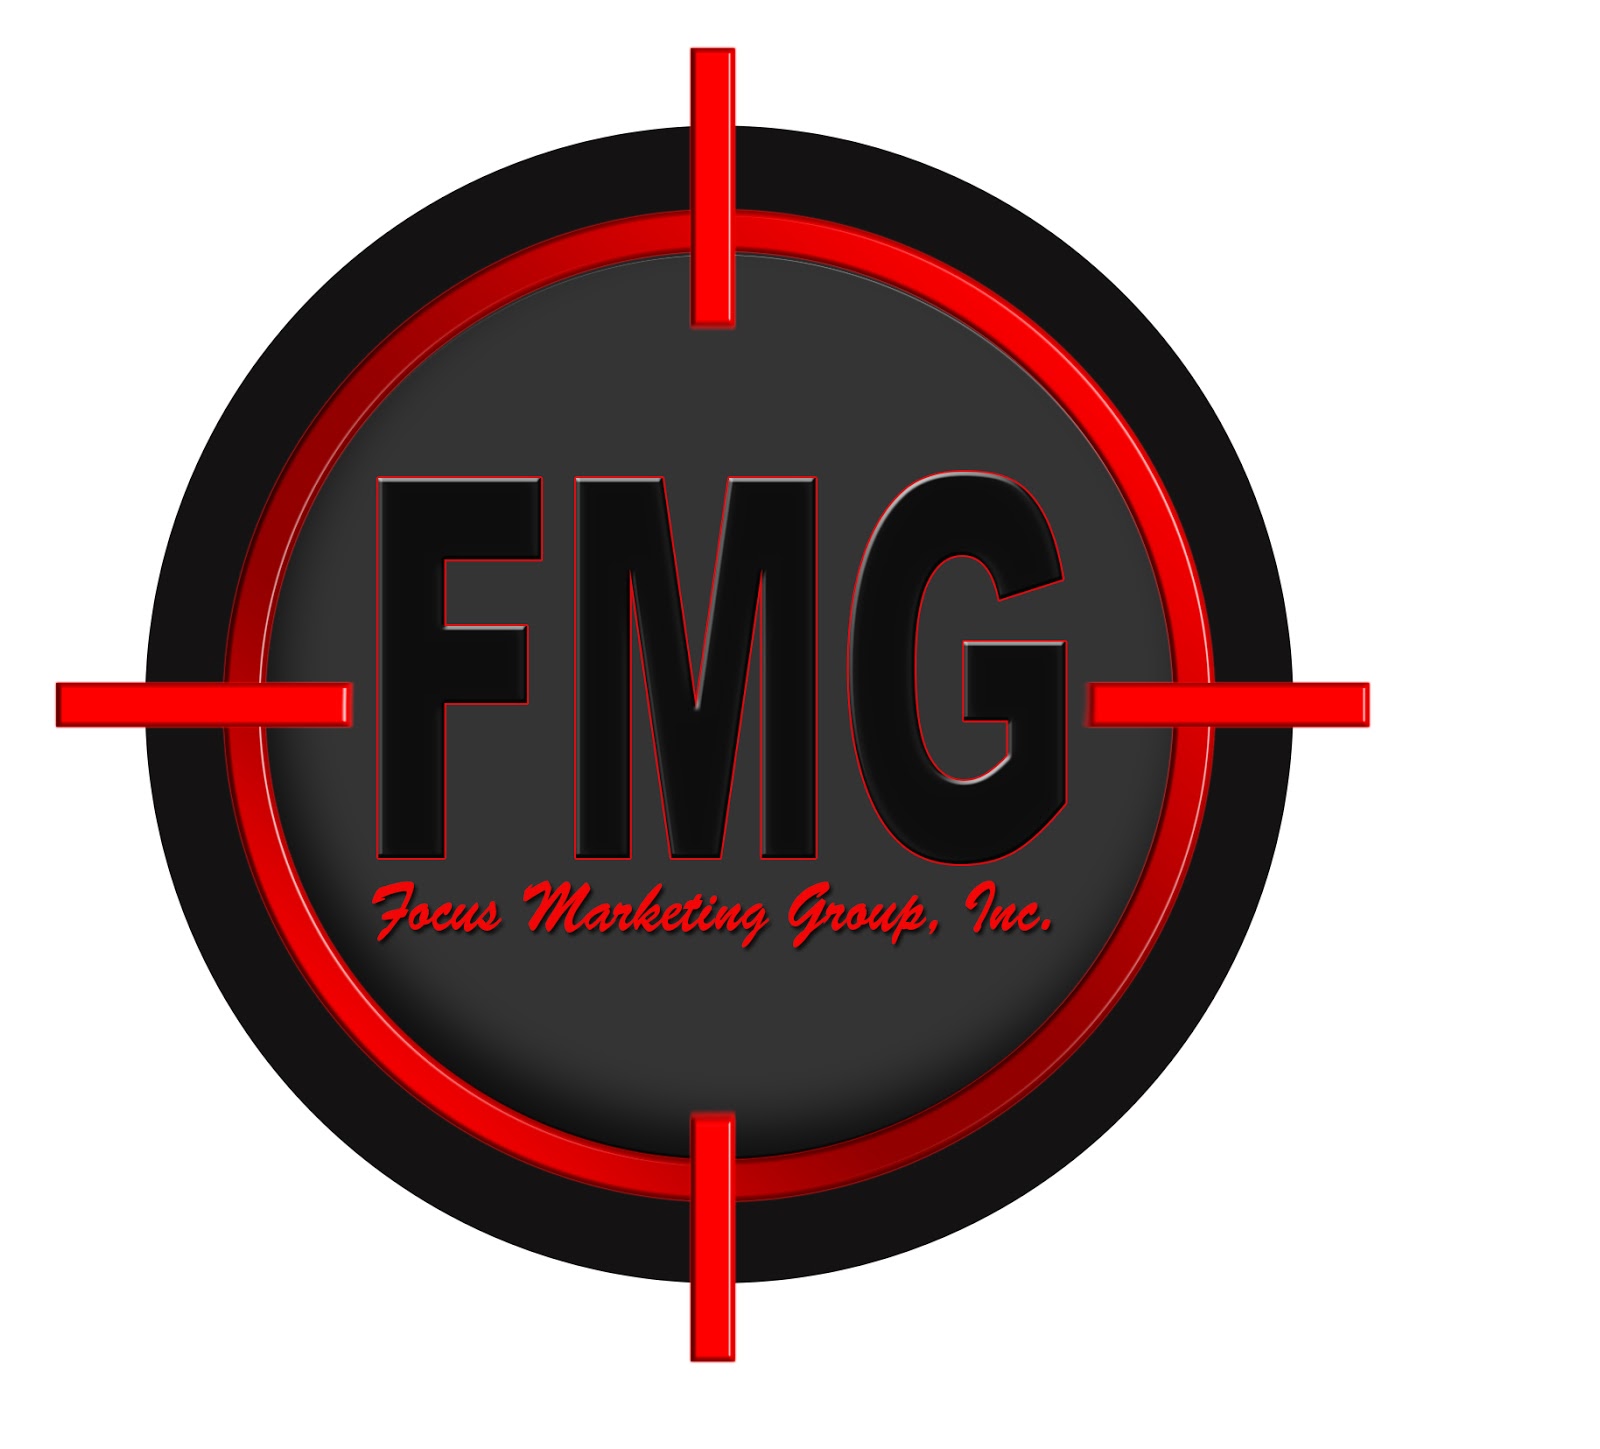 Got Focus? :|: Blog from Focus Marketing Group, Inc.: New Website